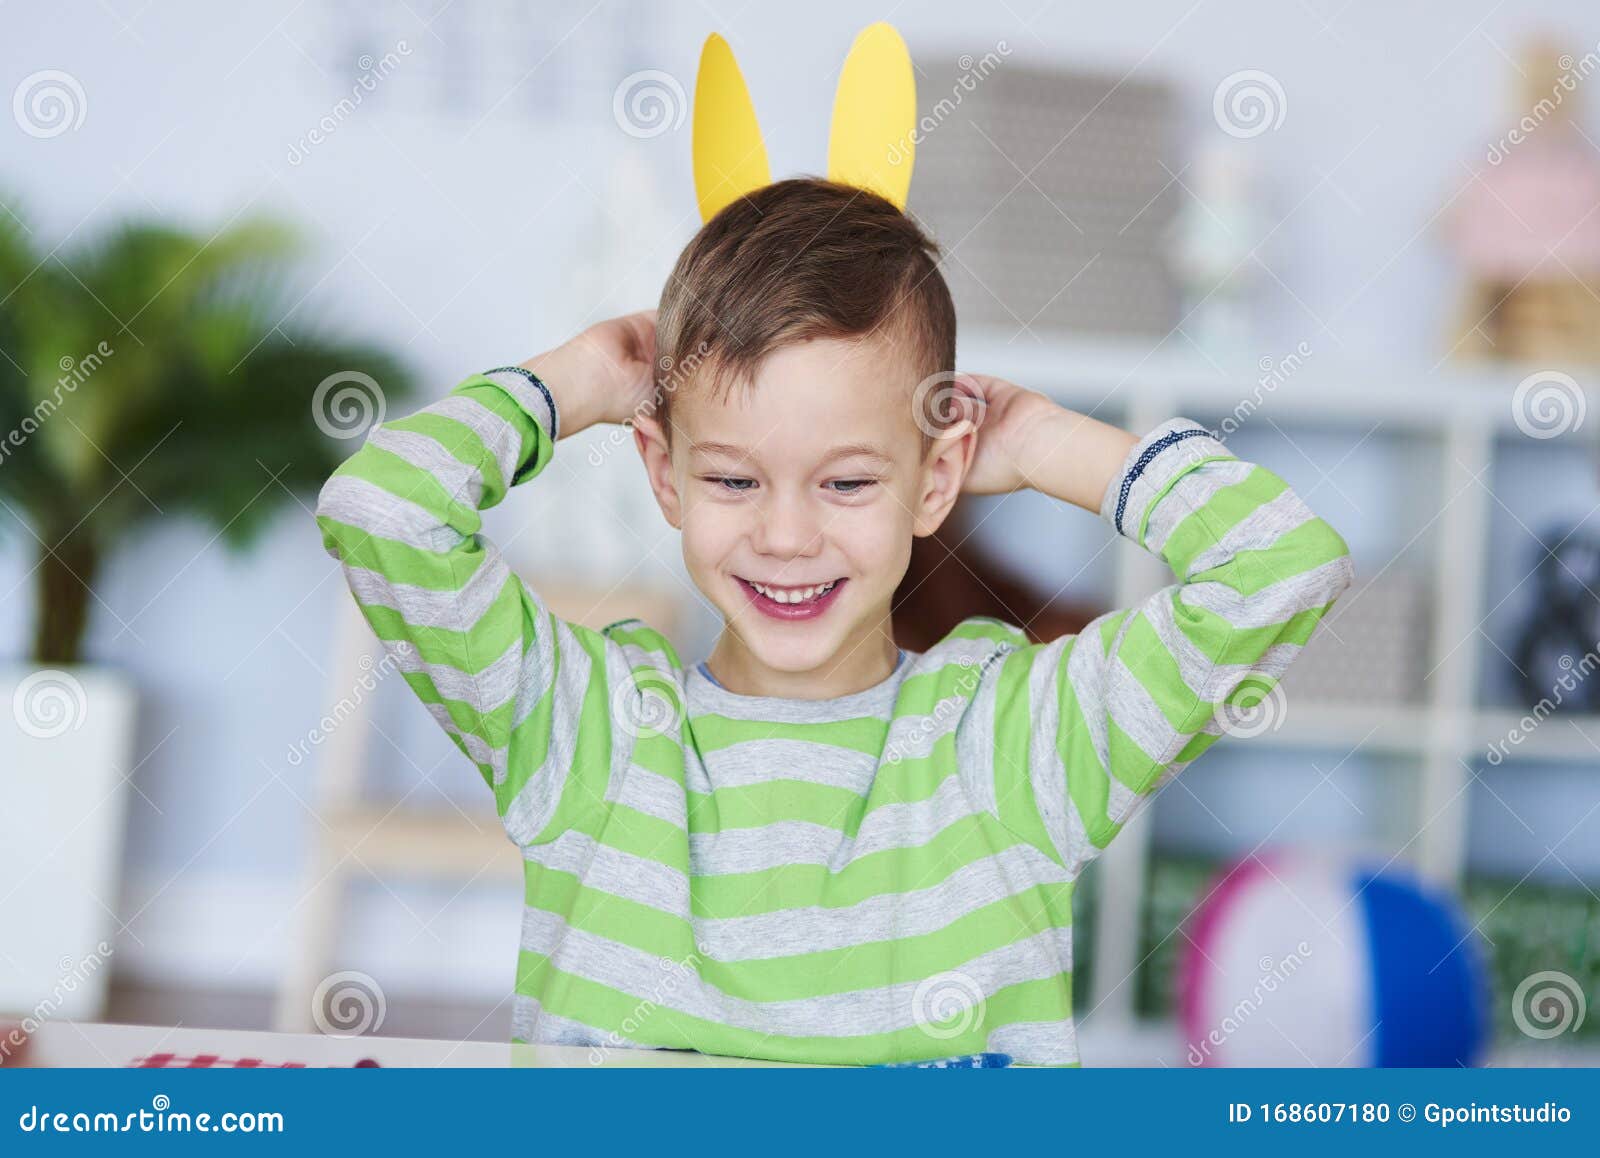 Happy boy with bunny ears stock photo. Image of animal - 168607180